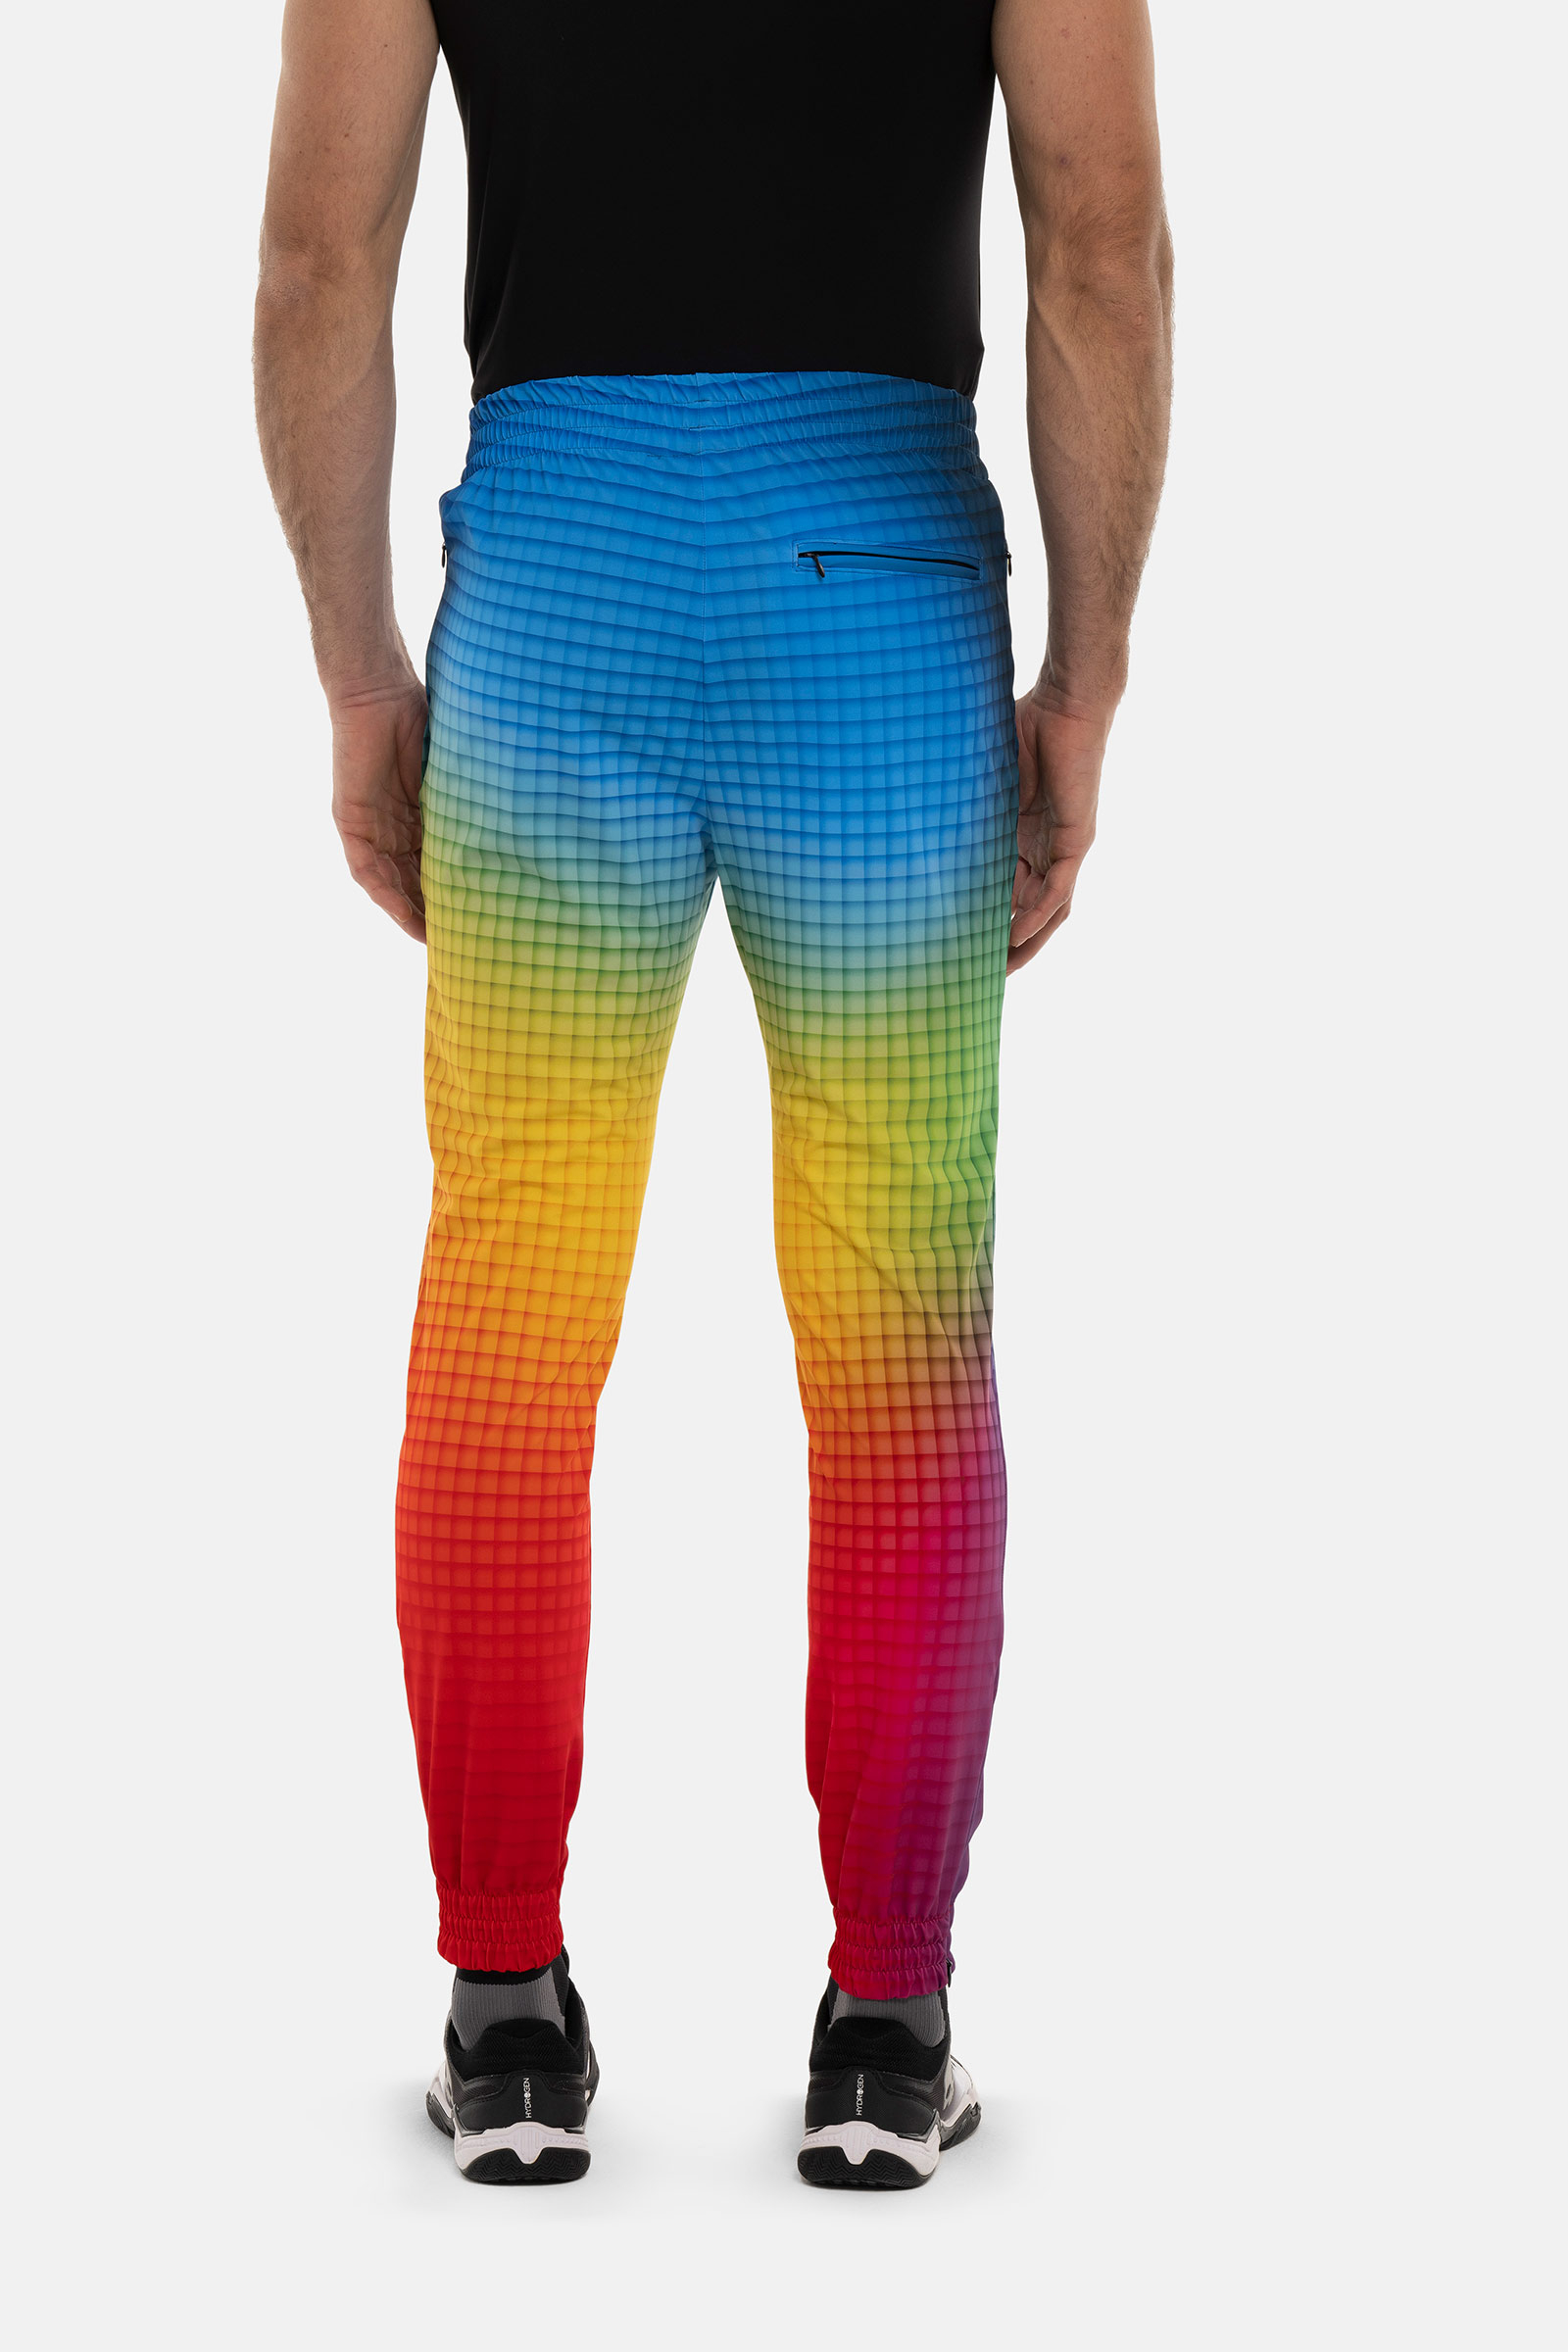 SPECTRUM TECH PANTS - RAINBOW - Hydrogen - Luxury Sportwear